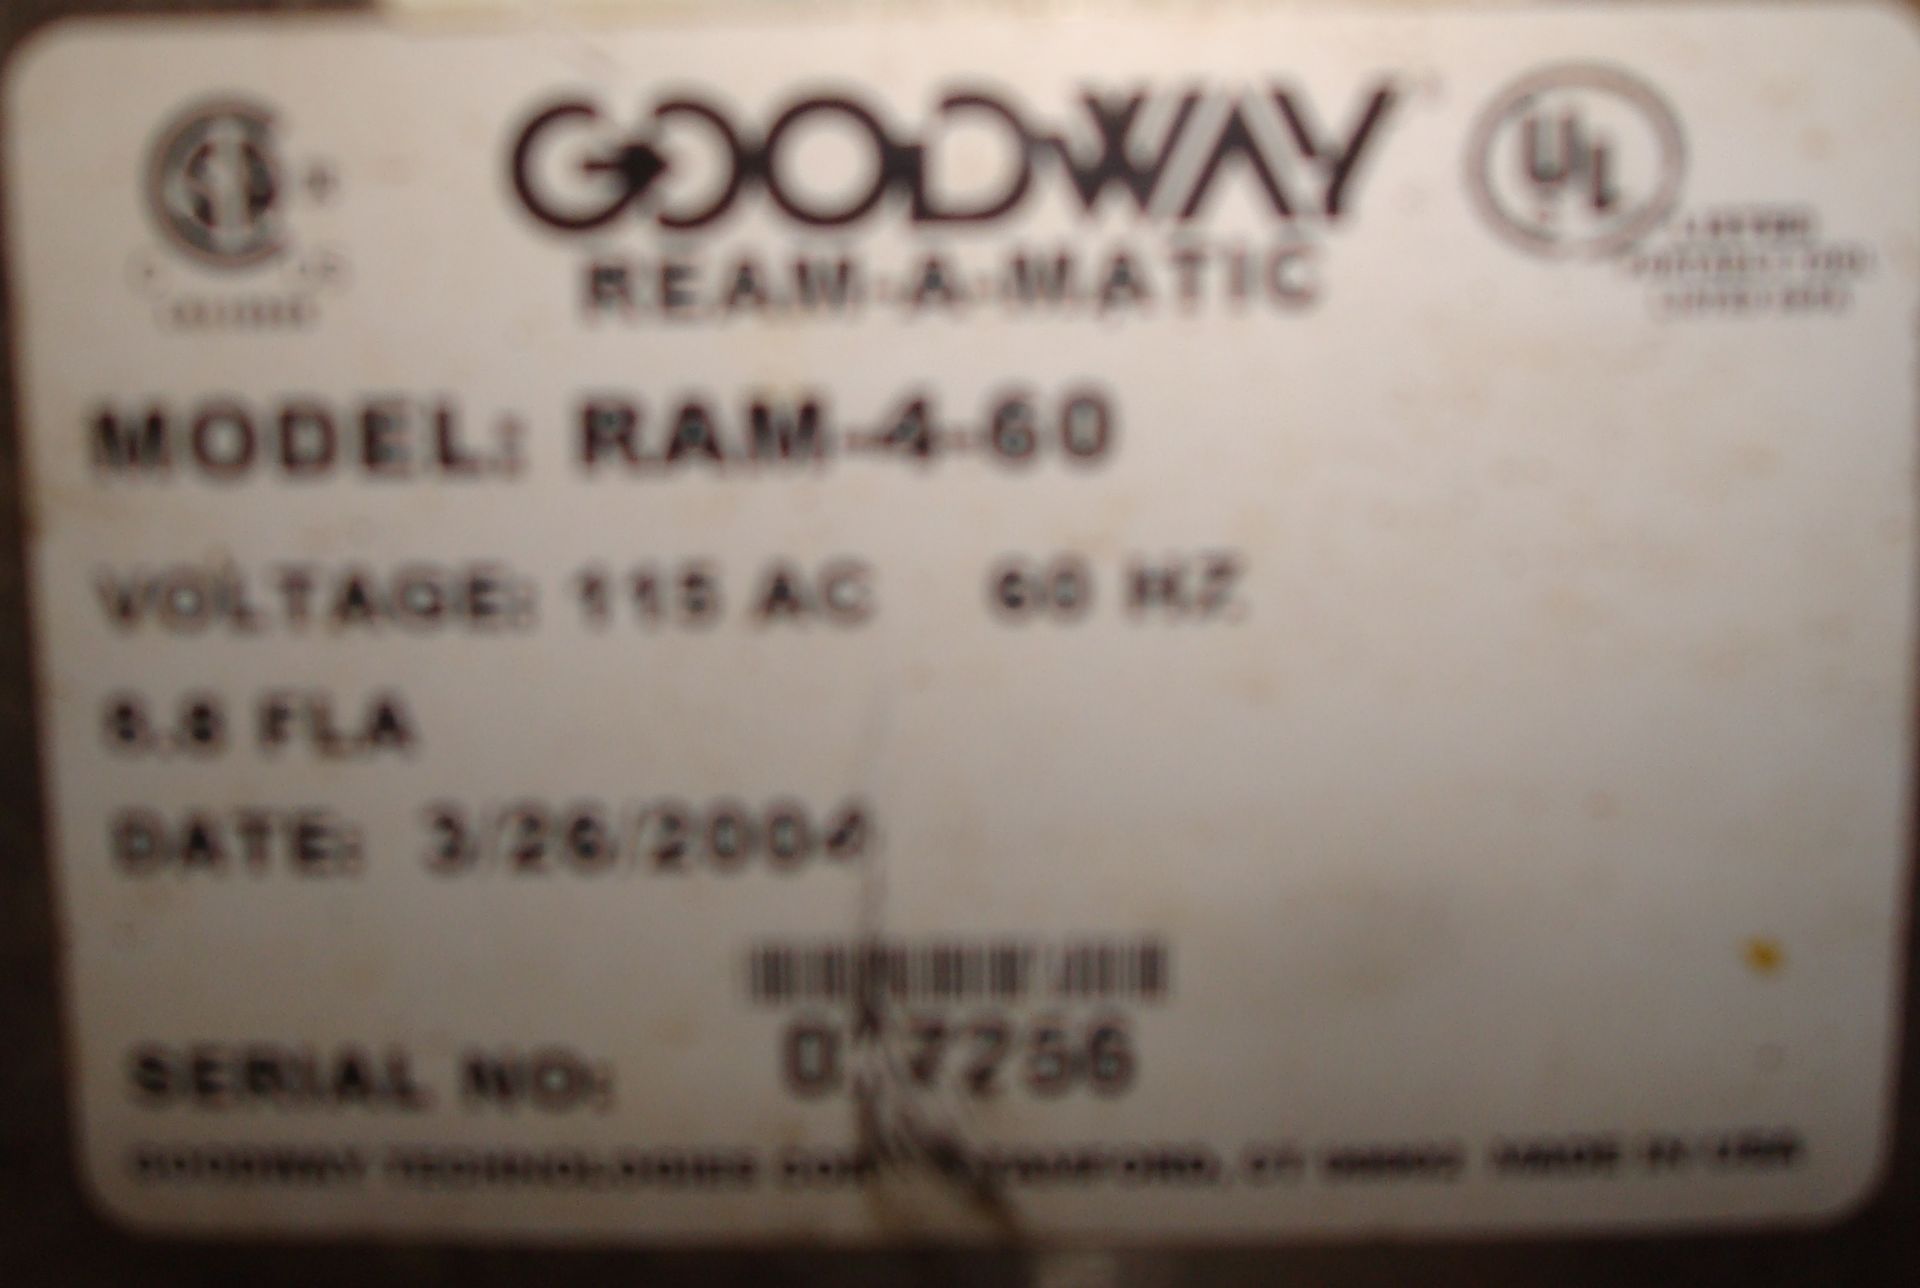 Goodway model RAM-4-60 rotary chiller tube cleaner - Bild 4 aus 5